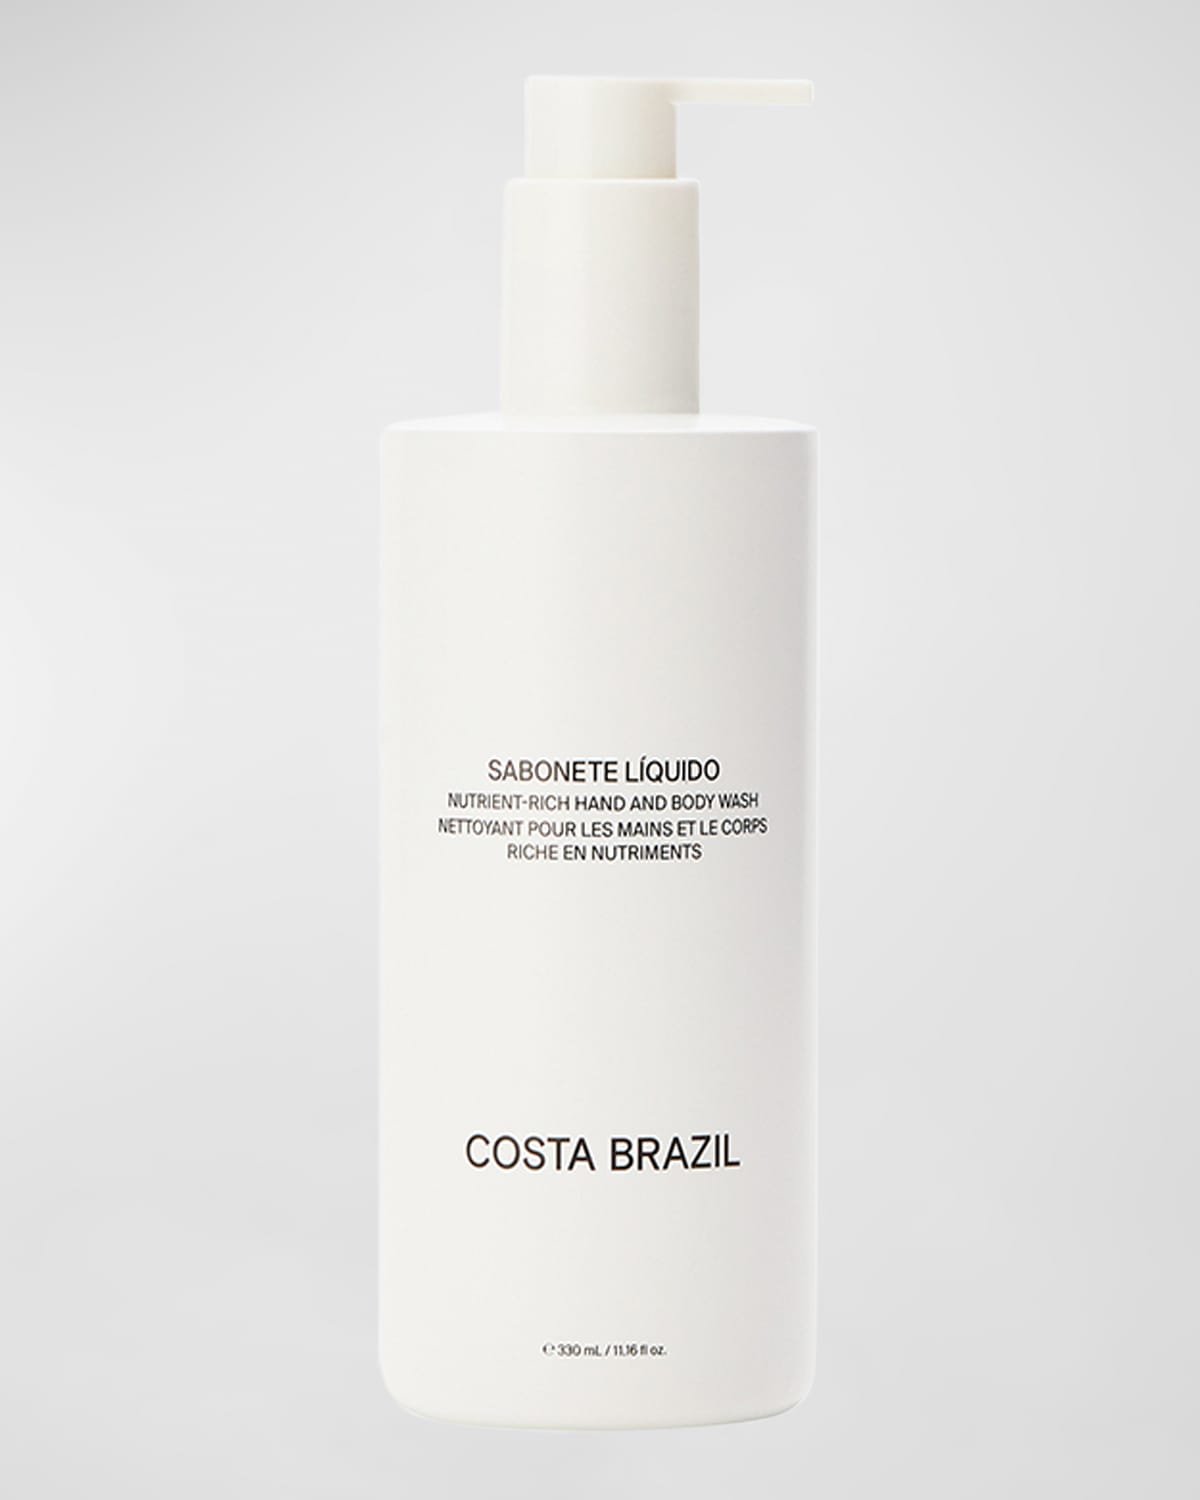 Costa Brazil Sabonete Liquido Nutrient Rich Hand and Body Wash, 11 oz.